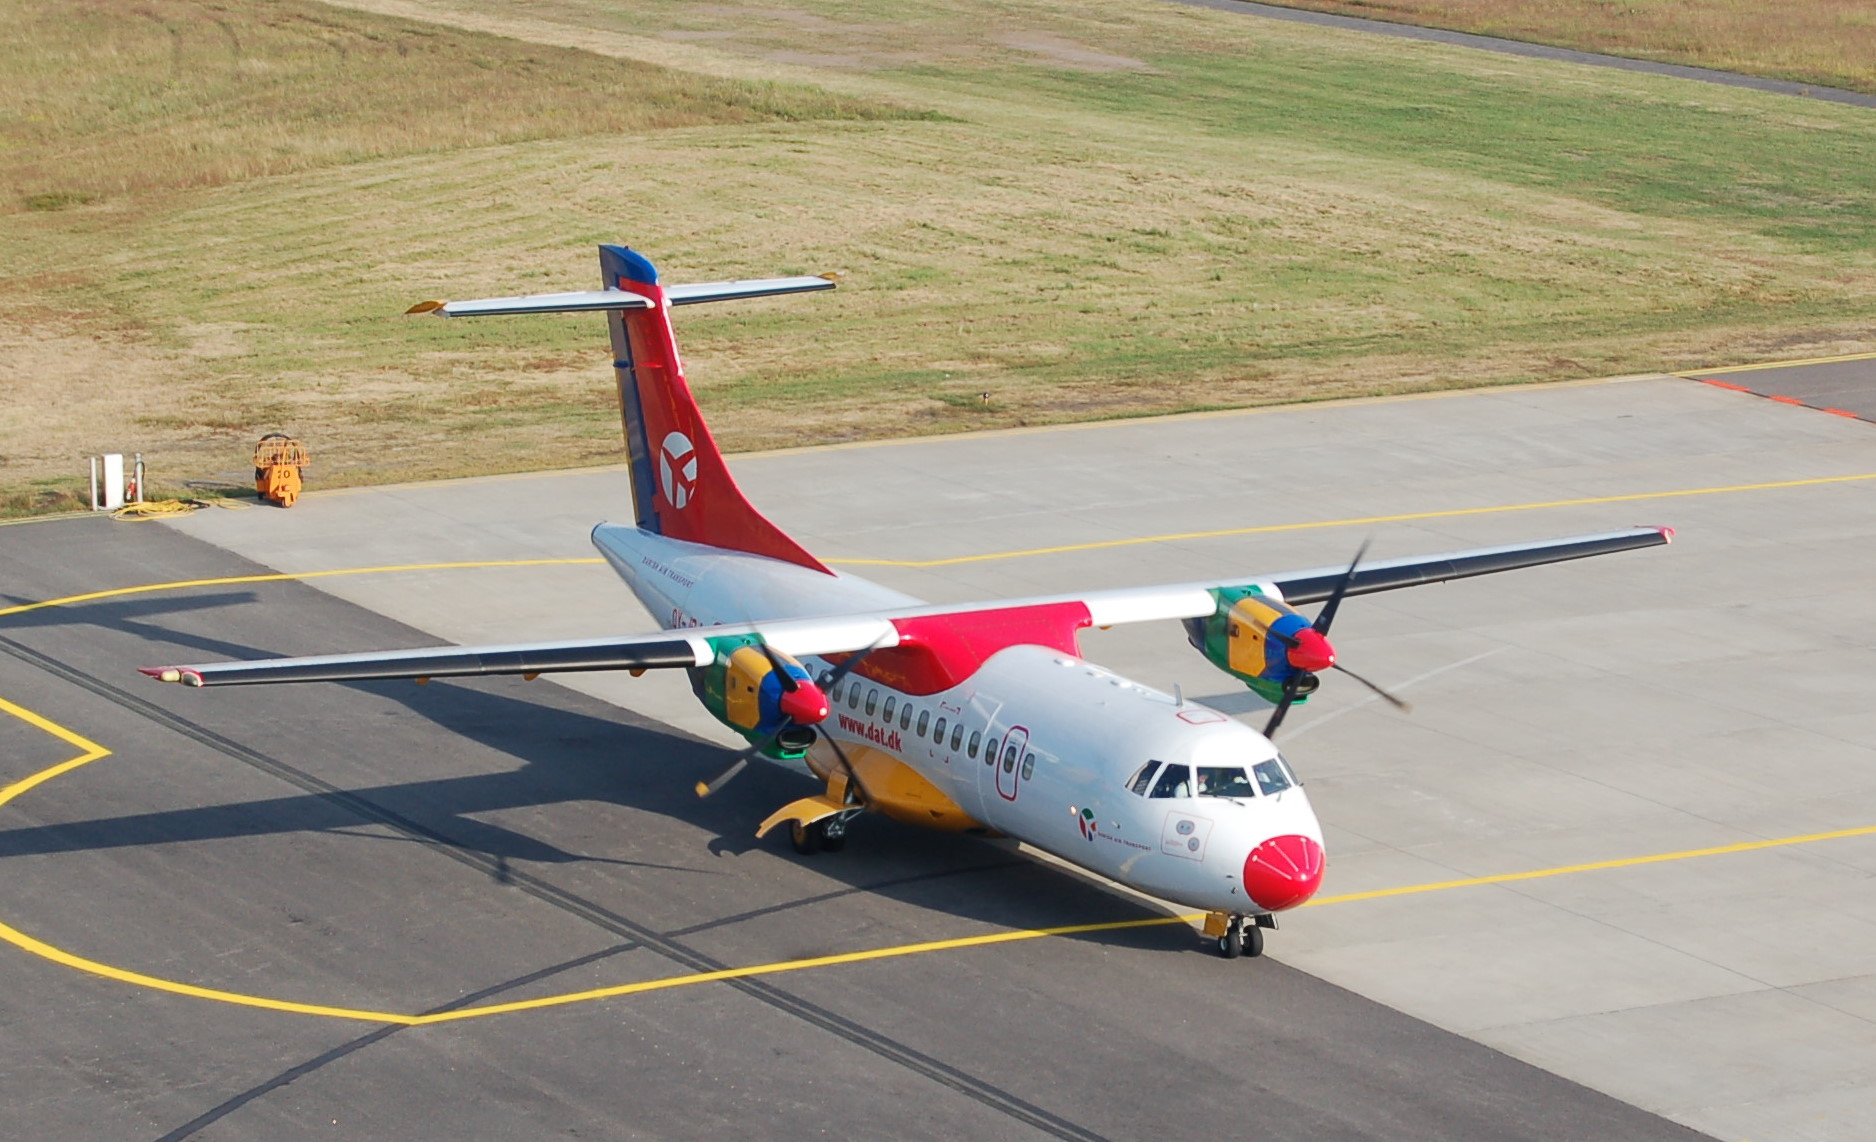 ATR ATR-42 next